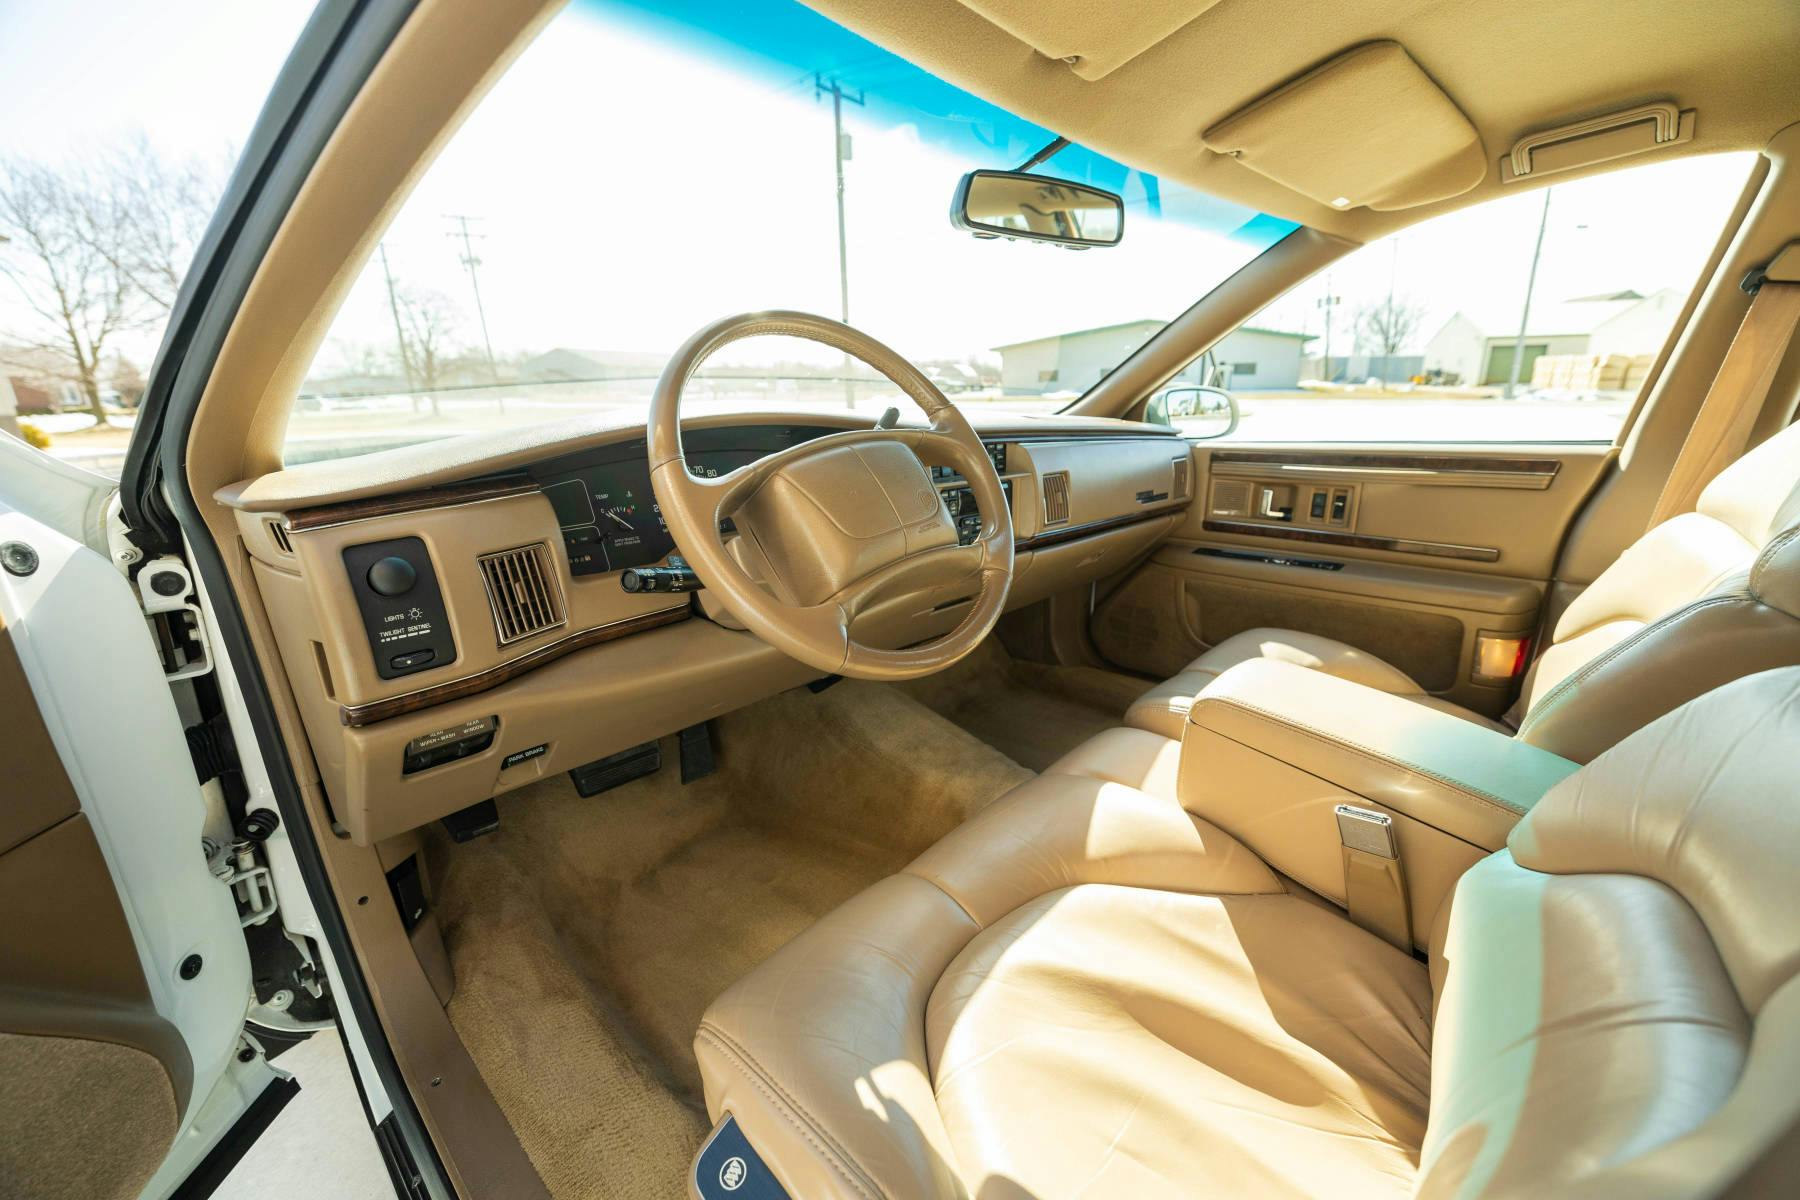 1996 Buick Roadmaster Estate Wagon interior front angle